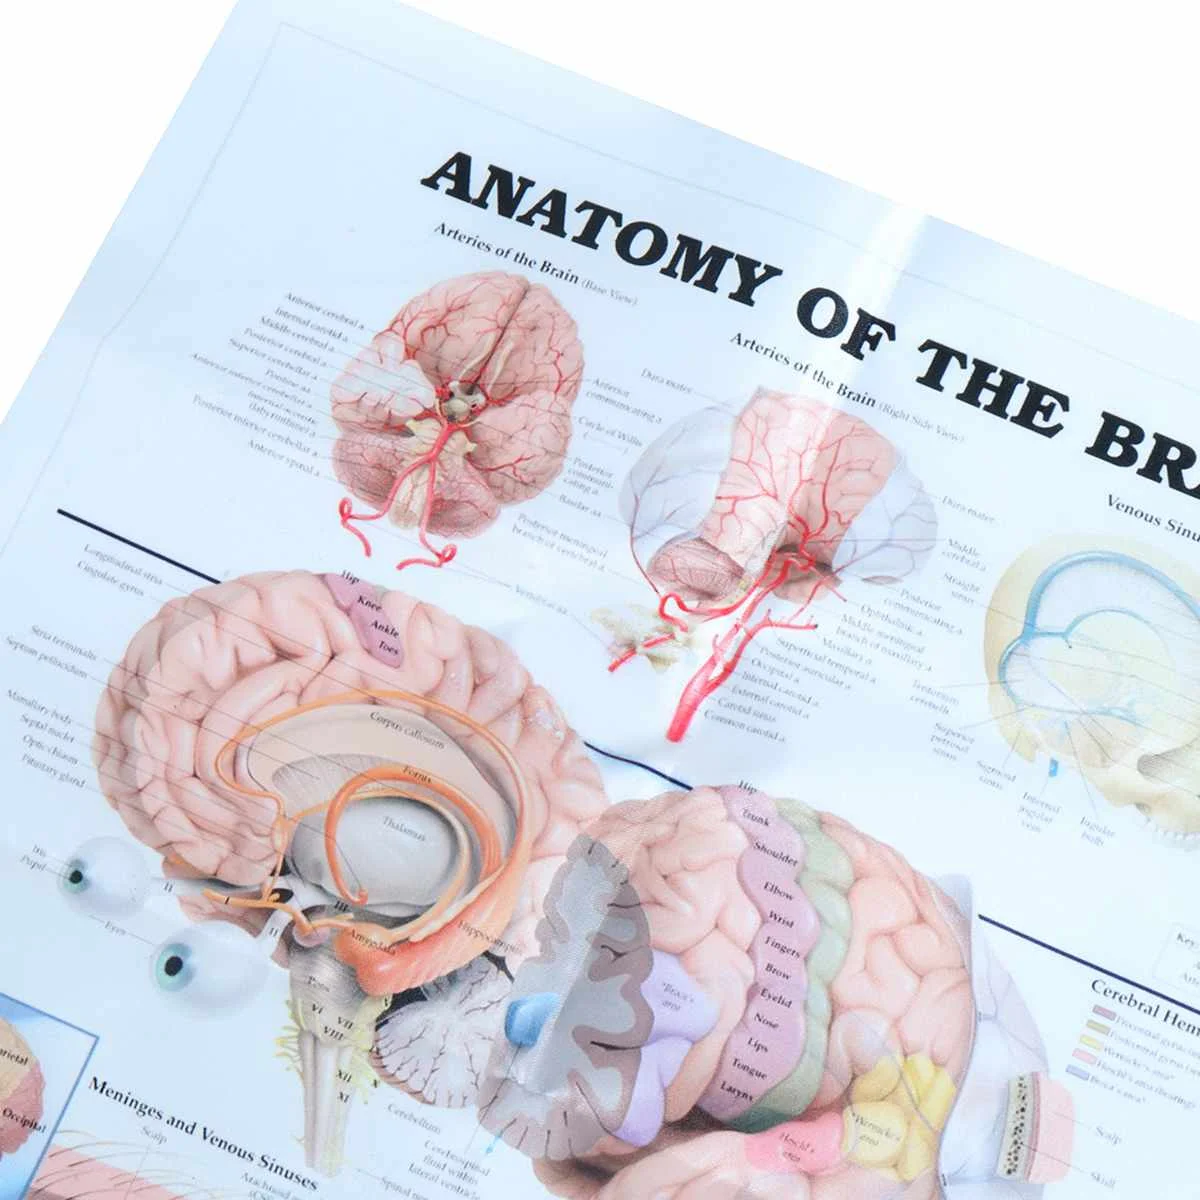 Анатомия человека системы мозга плакат анатомическая диаграмма Человеческого Тела Медицинский художественный настенный плакат Шелковый принт для образования домашнего декора